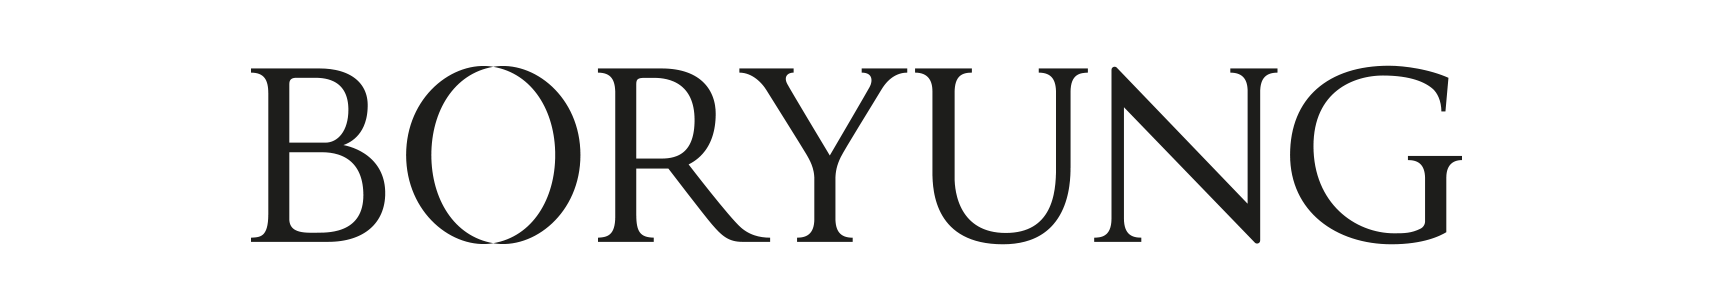 boryung_logo